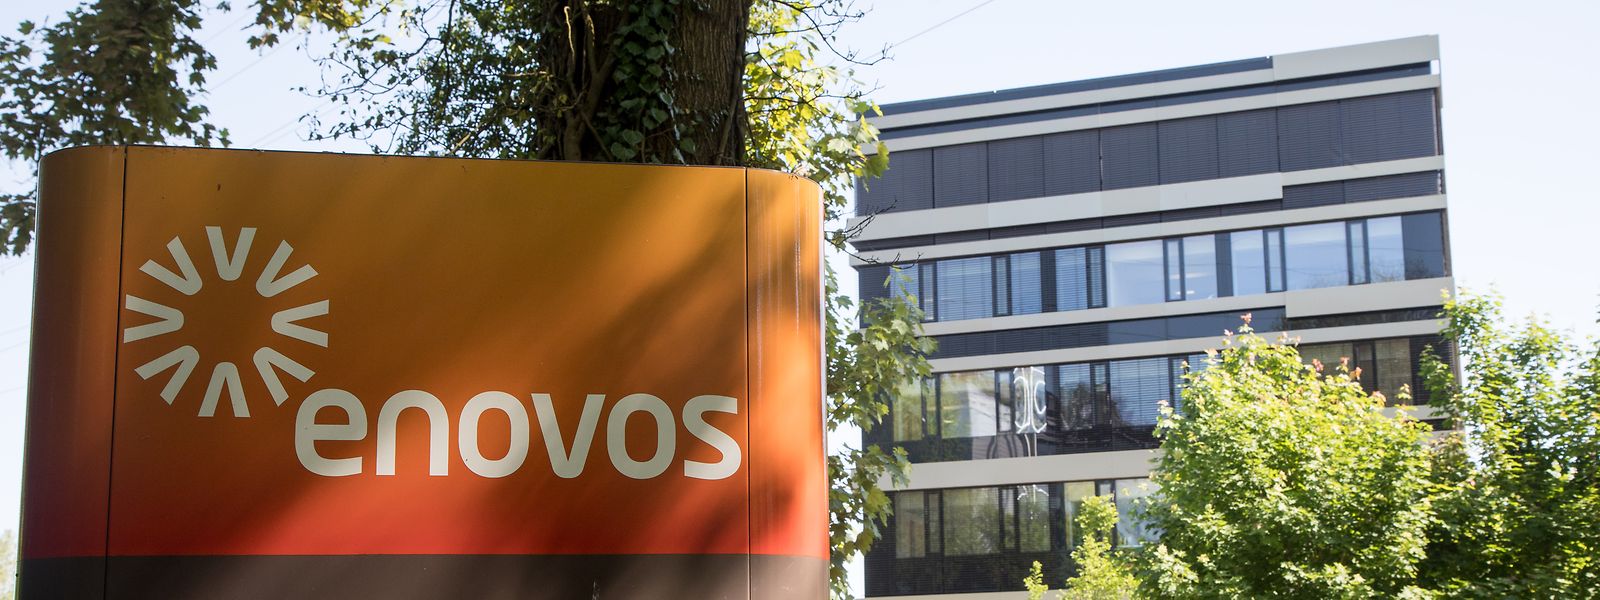 Unternehmen der Encevo-Gruppe - der Netzbetreiber Creos und der Energieversorger Enovos - wurden in der Nacht vom 22. auf den 23. Juli Opfer eines Cyberangriffs.